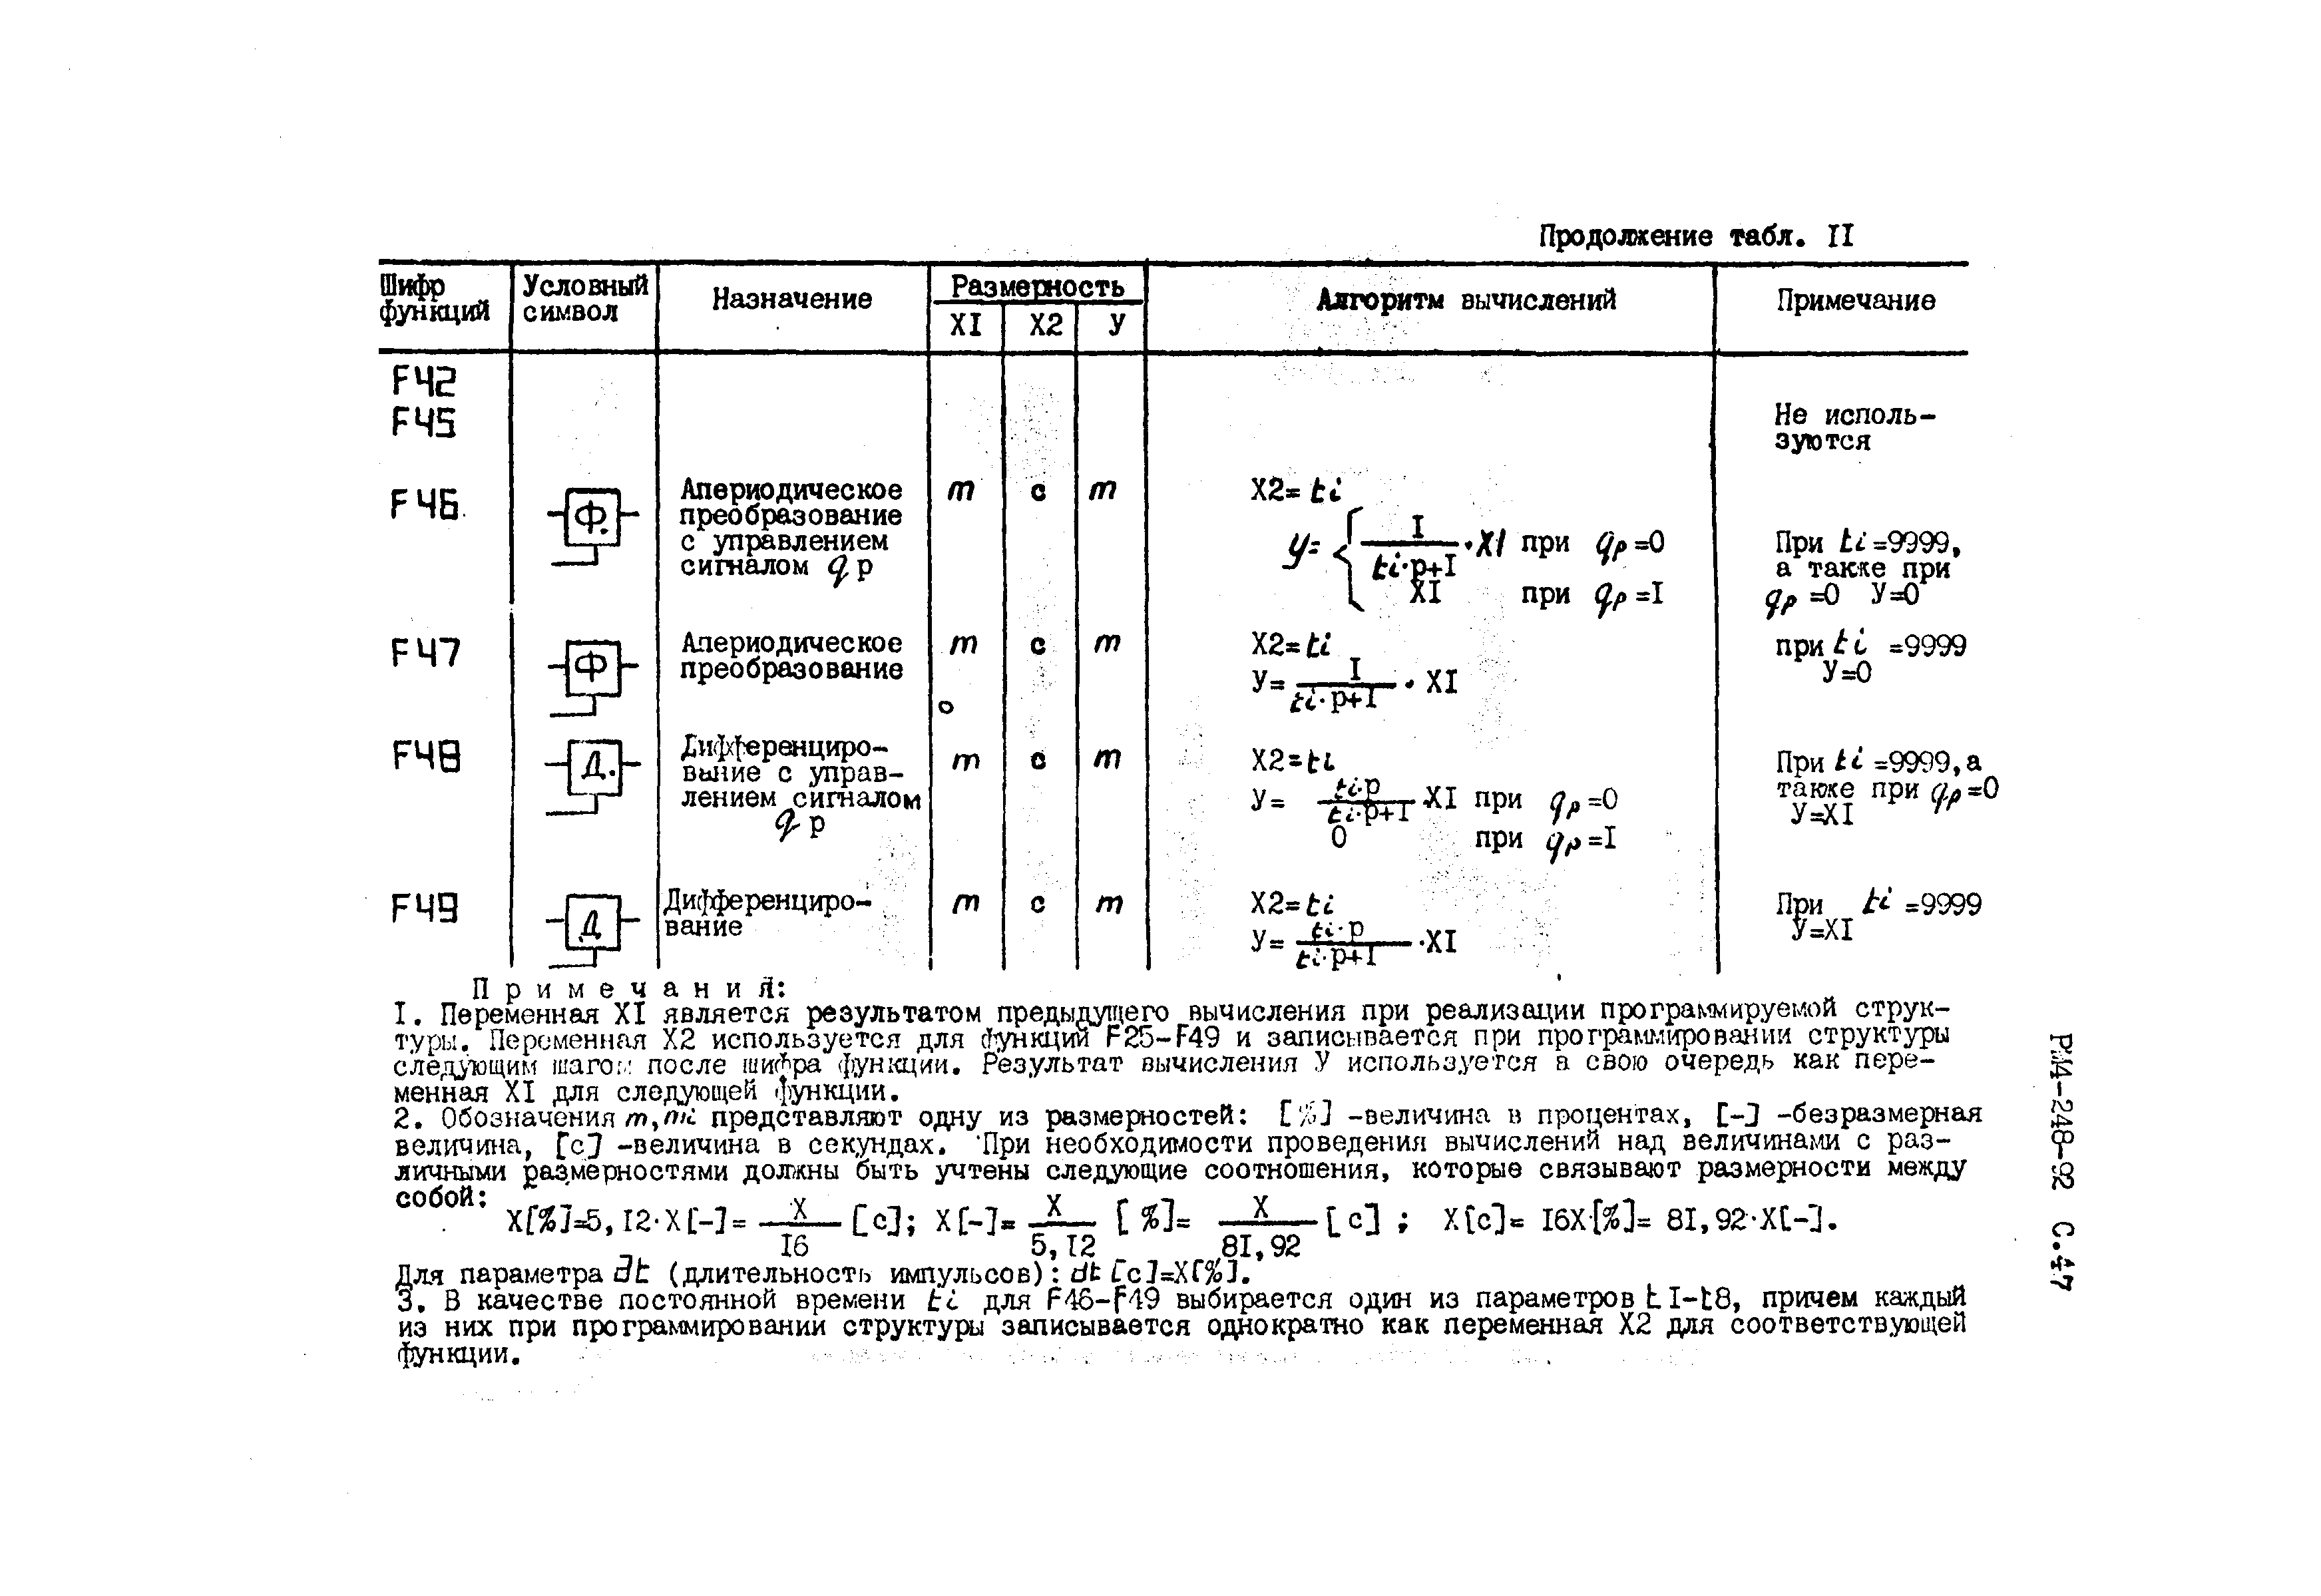 РМ 4-248-92